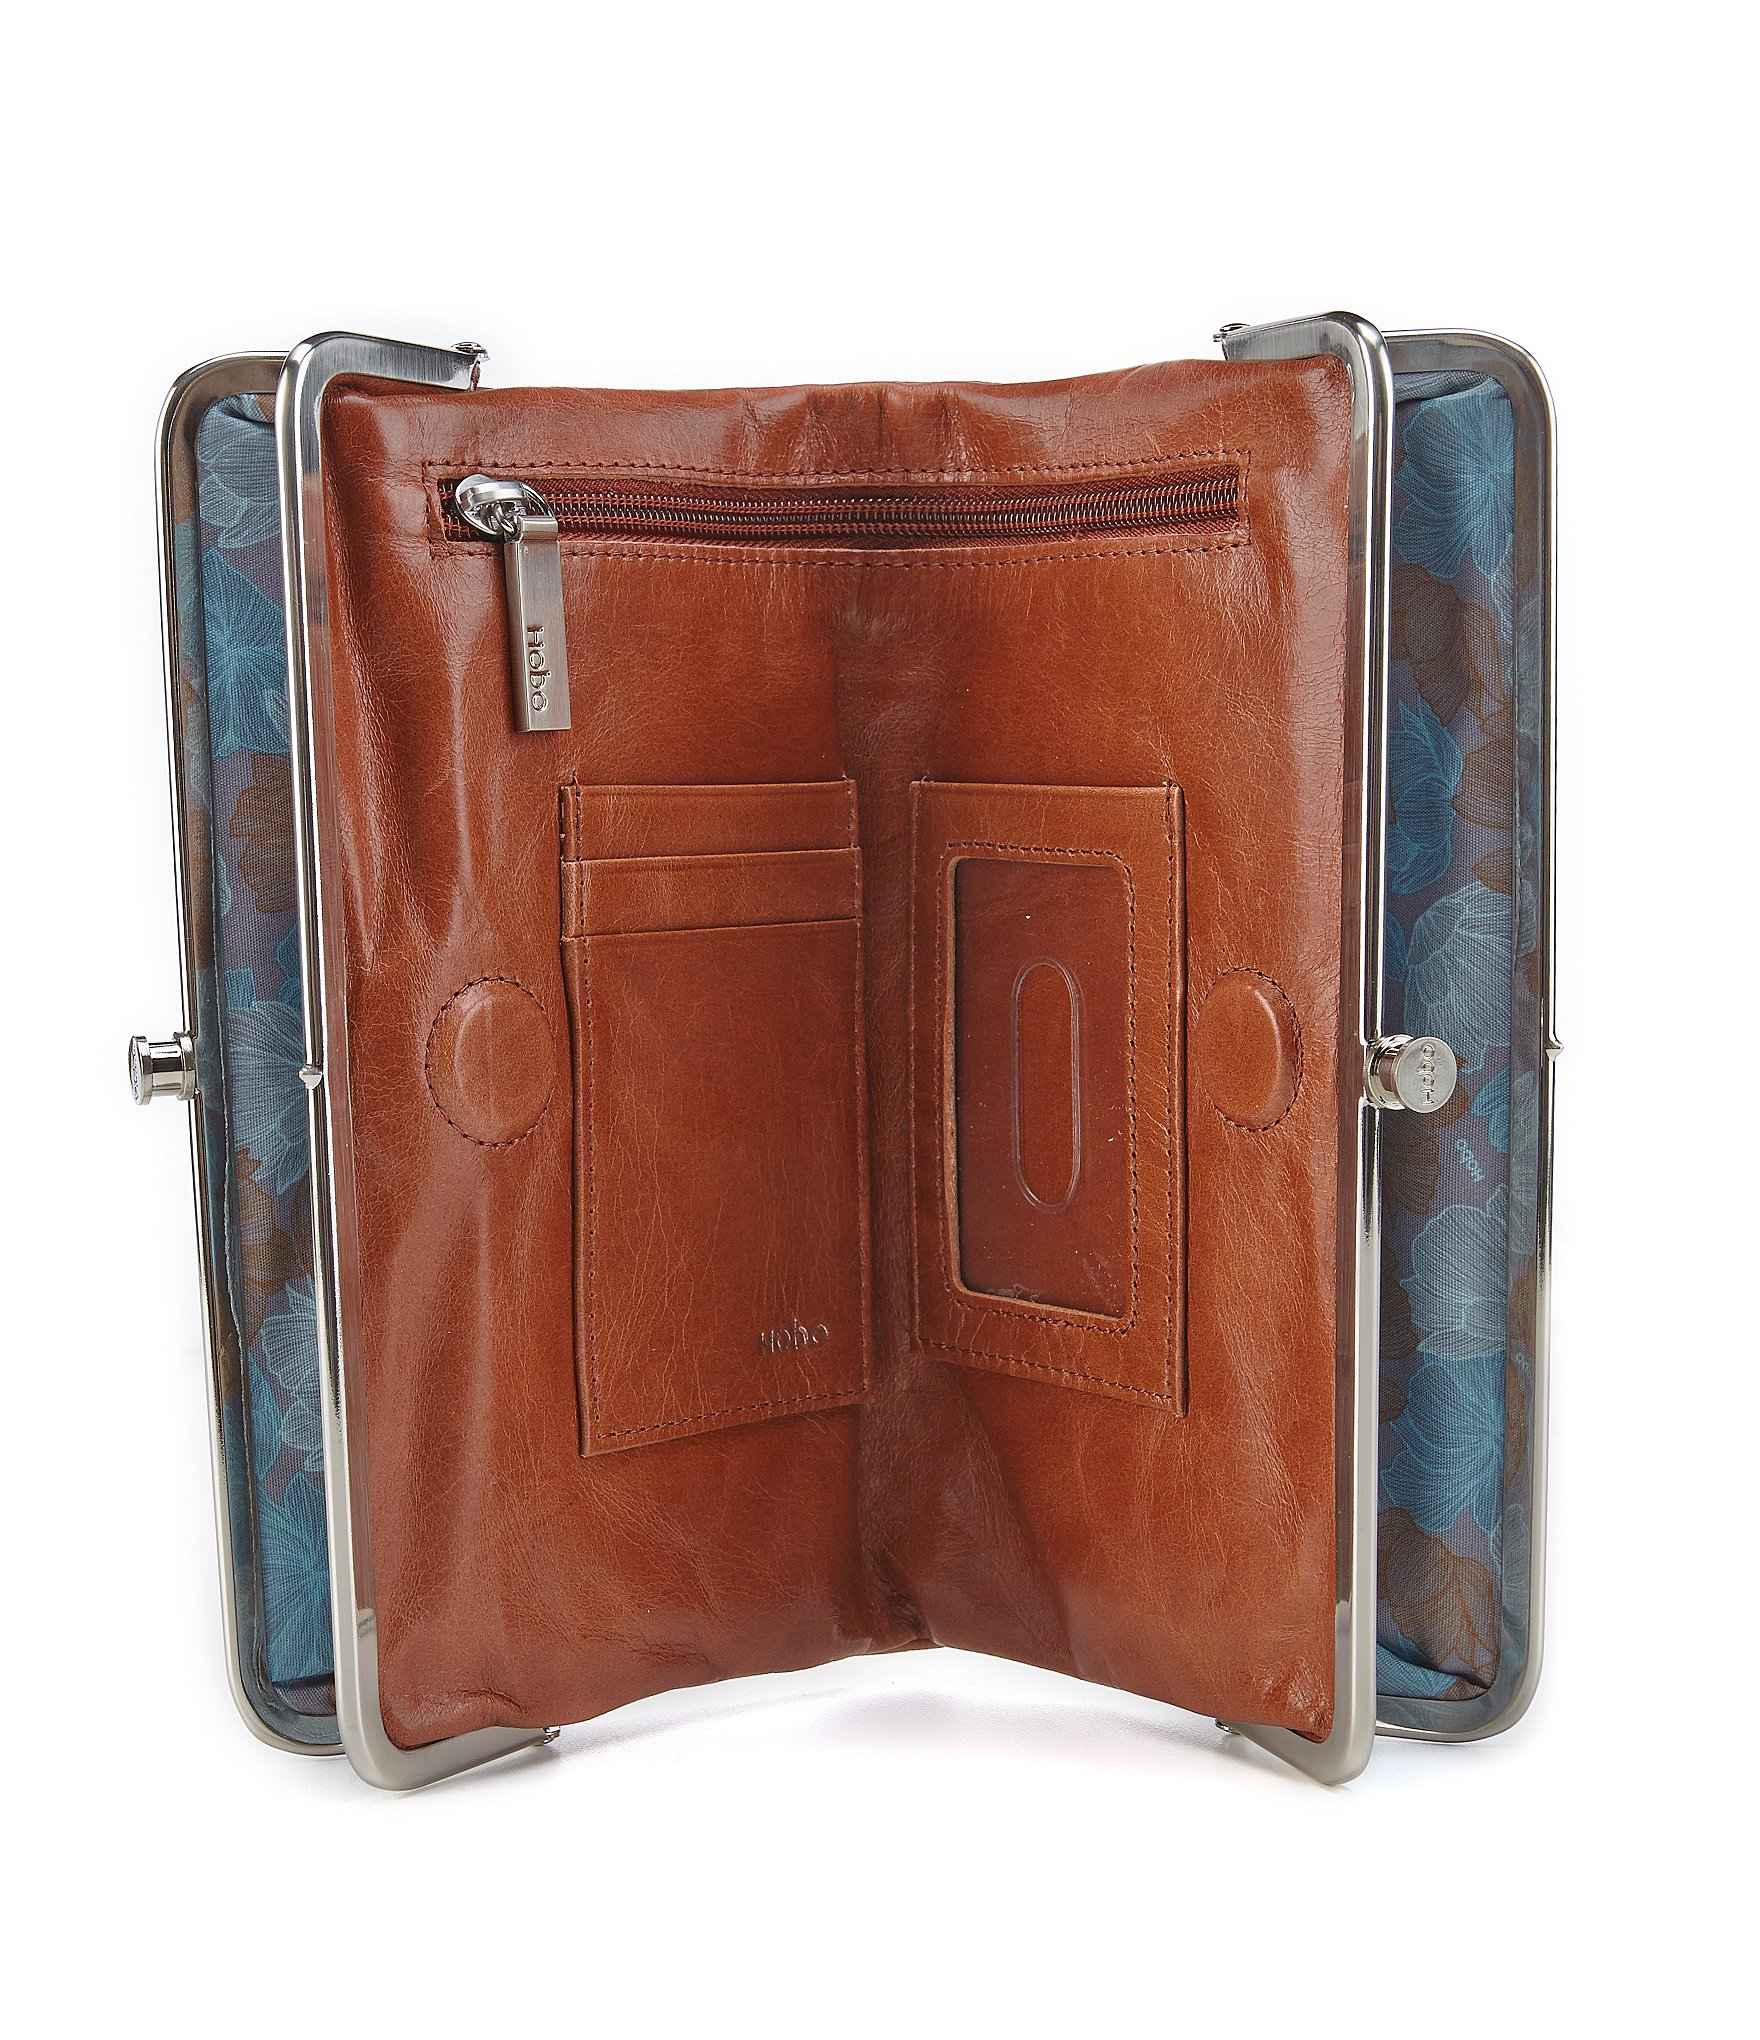 Lyst - Hobo Original Lauren Double-frame Clutch Wallet in Brown